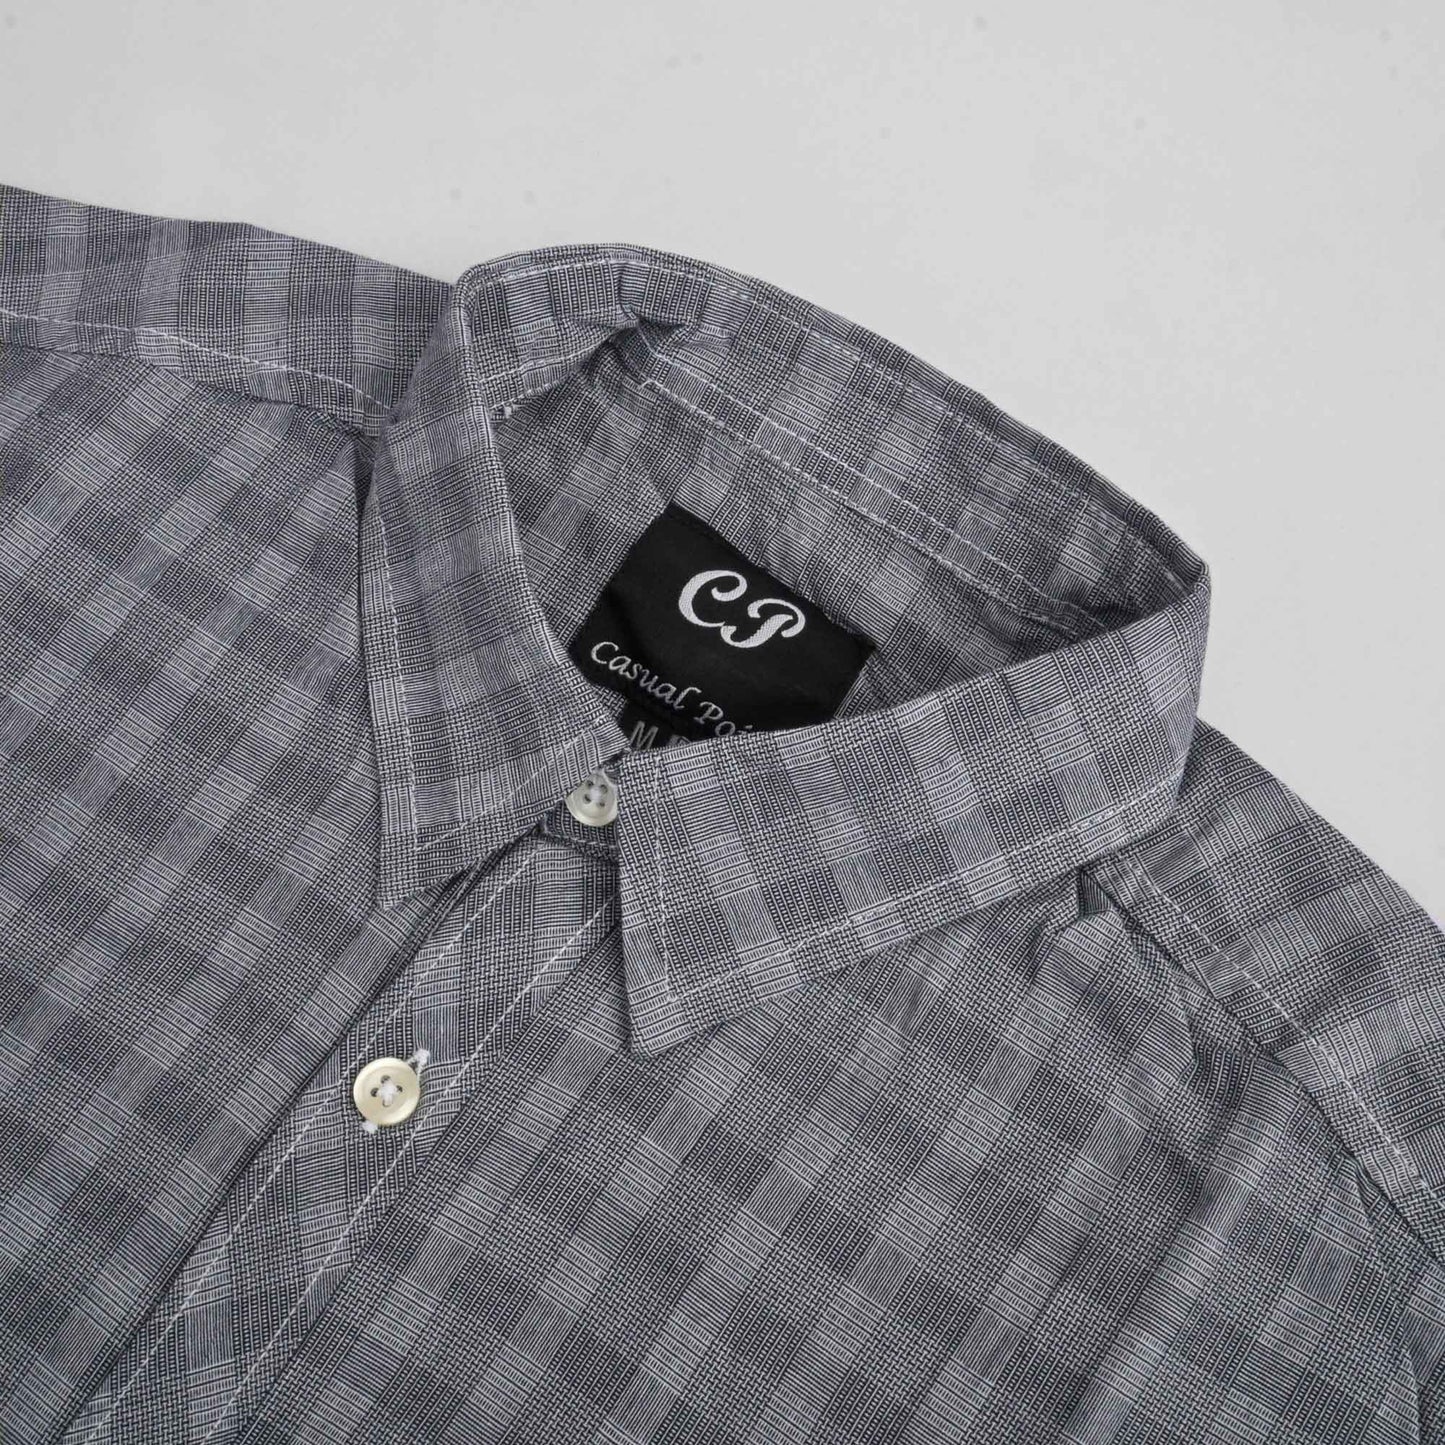 CP Men's Naarden Check Design Regular Fit Casual Shirt Men's Casual Shirt Minhas Garments 